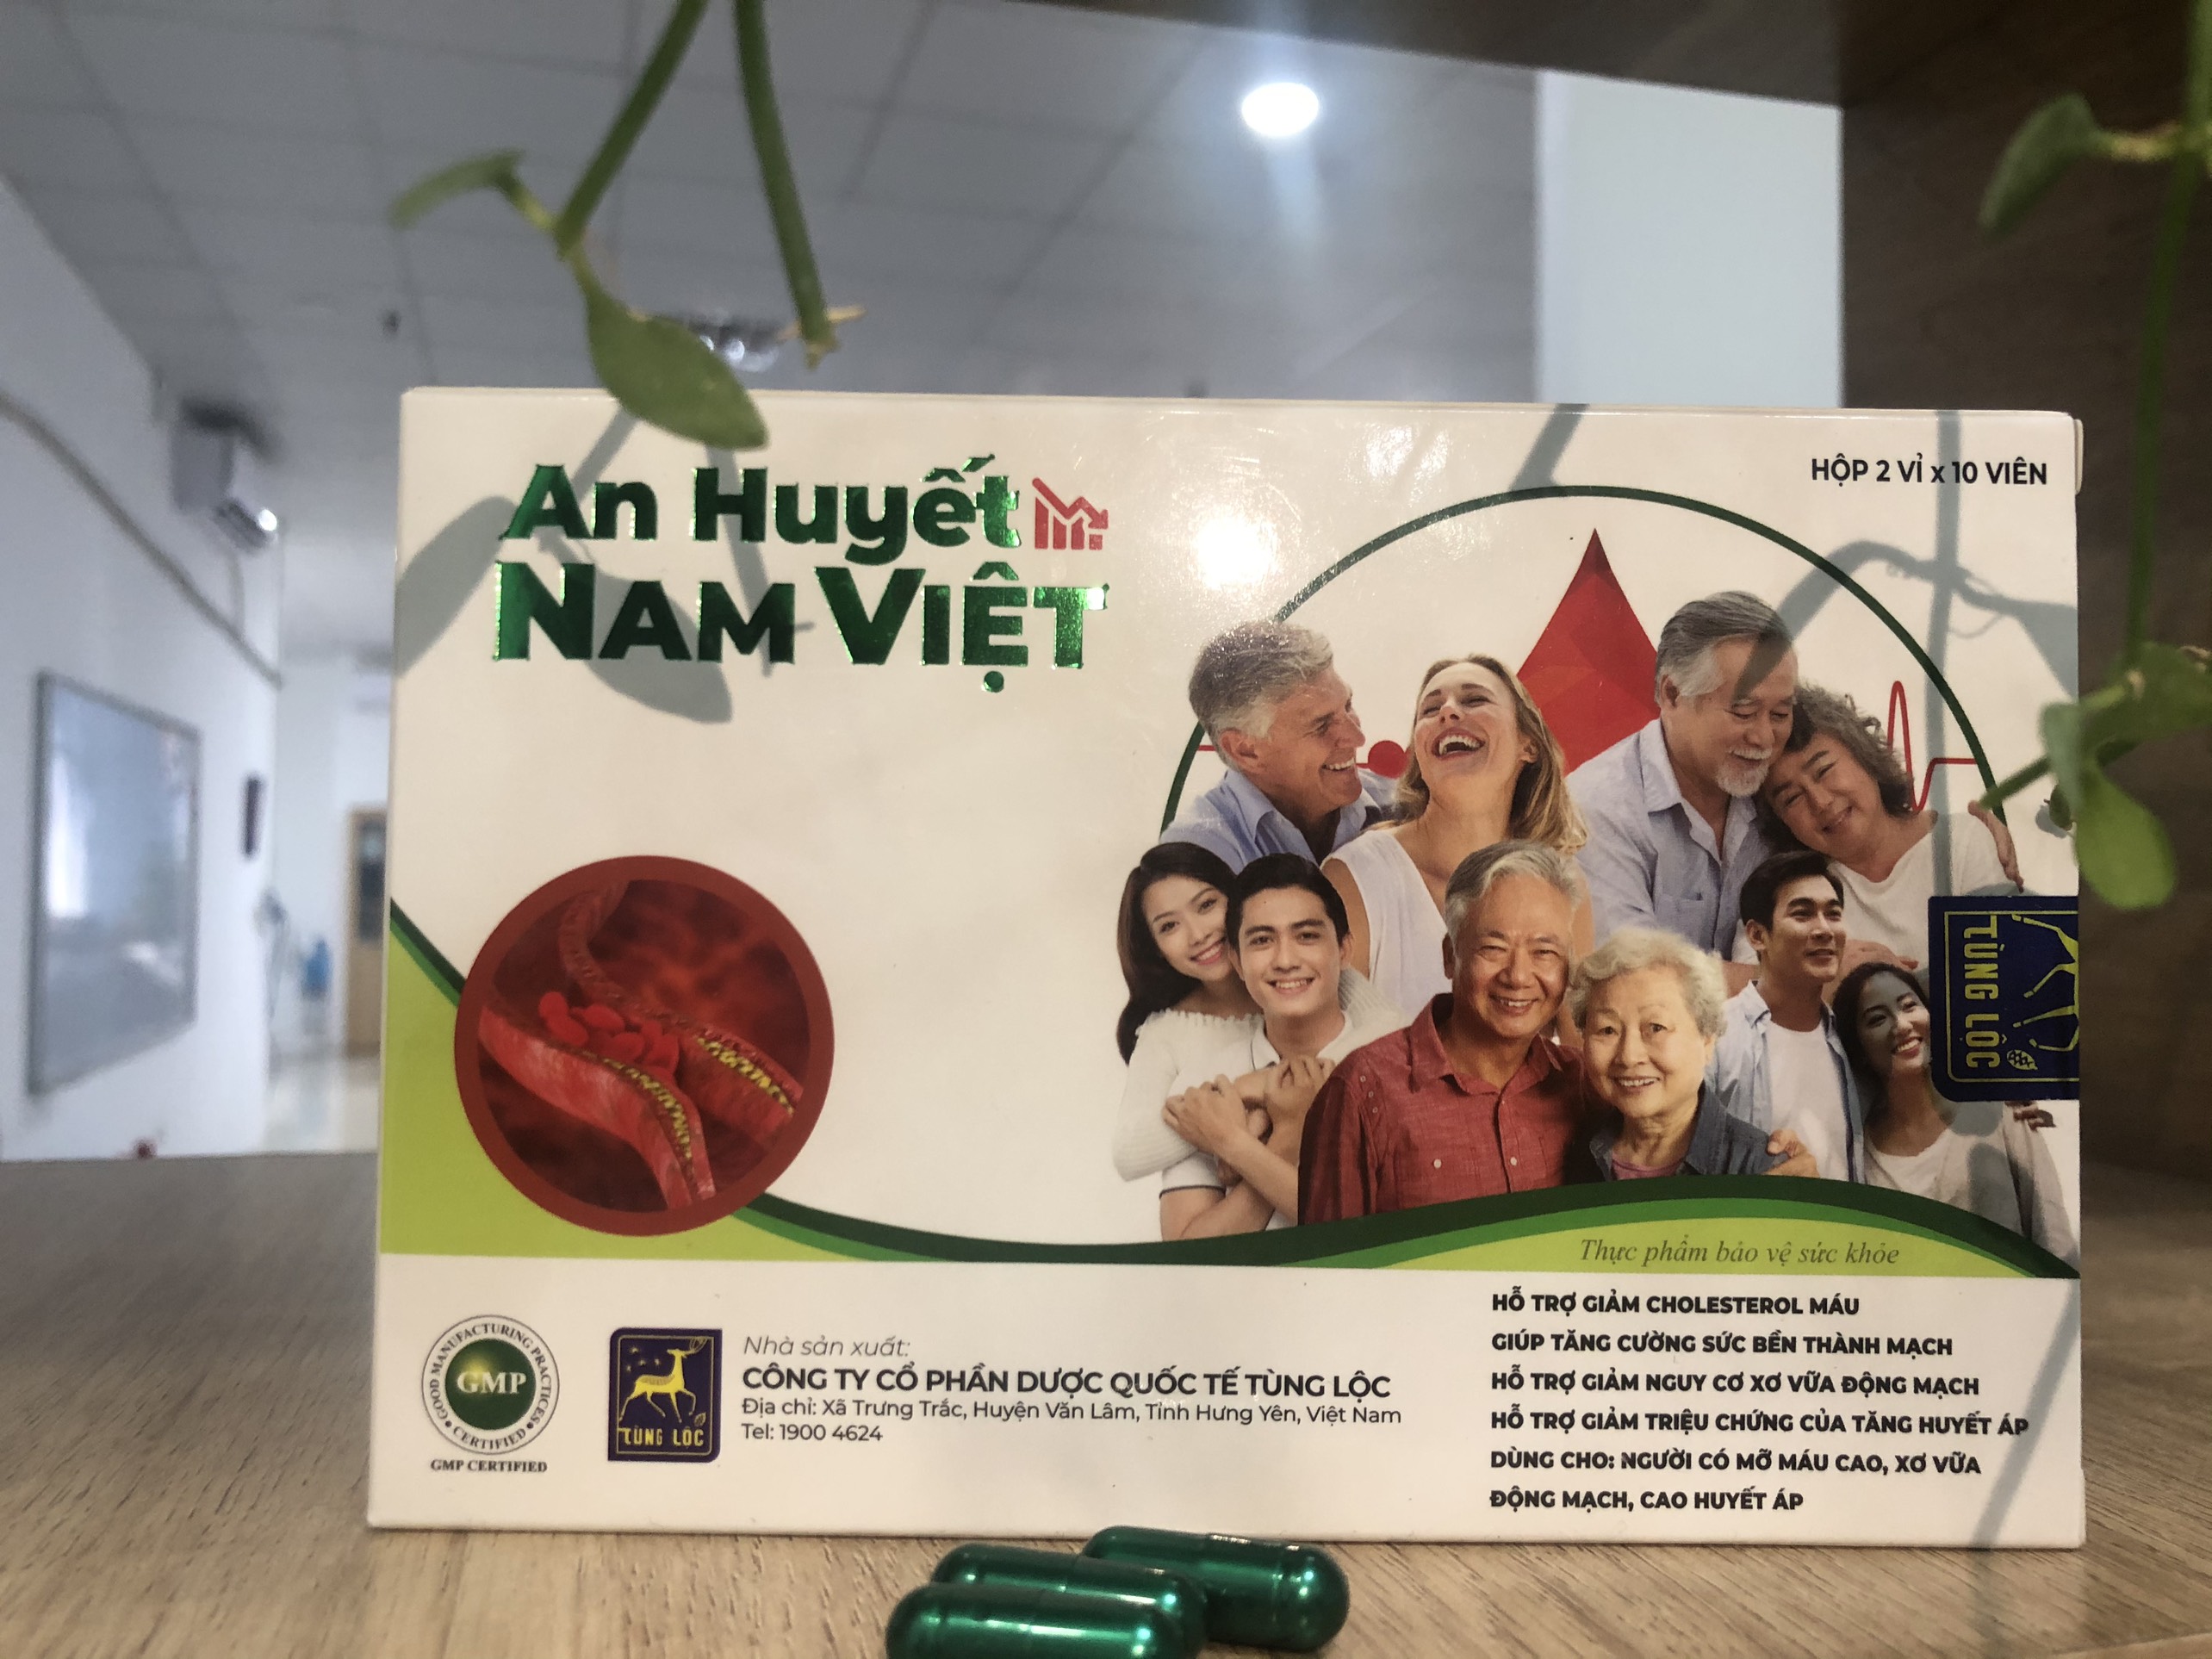 An huyết Nam Việt hỗ trợ gan nhiễm mỡ, máu nhiễm mỡ, rối loạn lipit máu, tim mạch